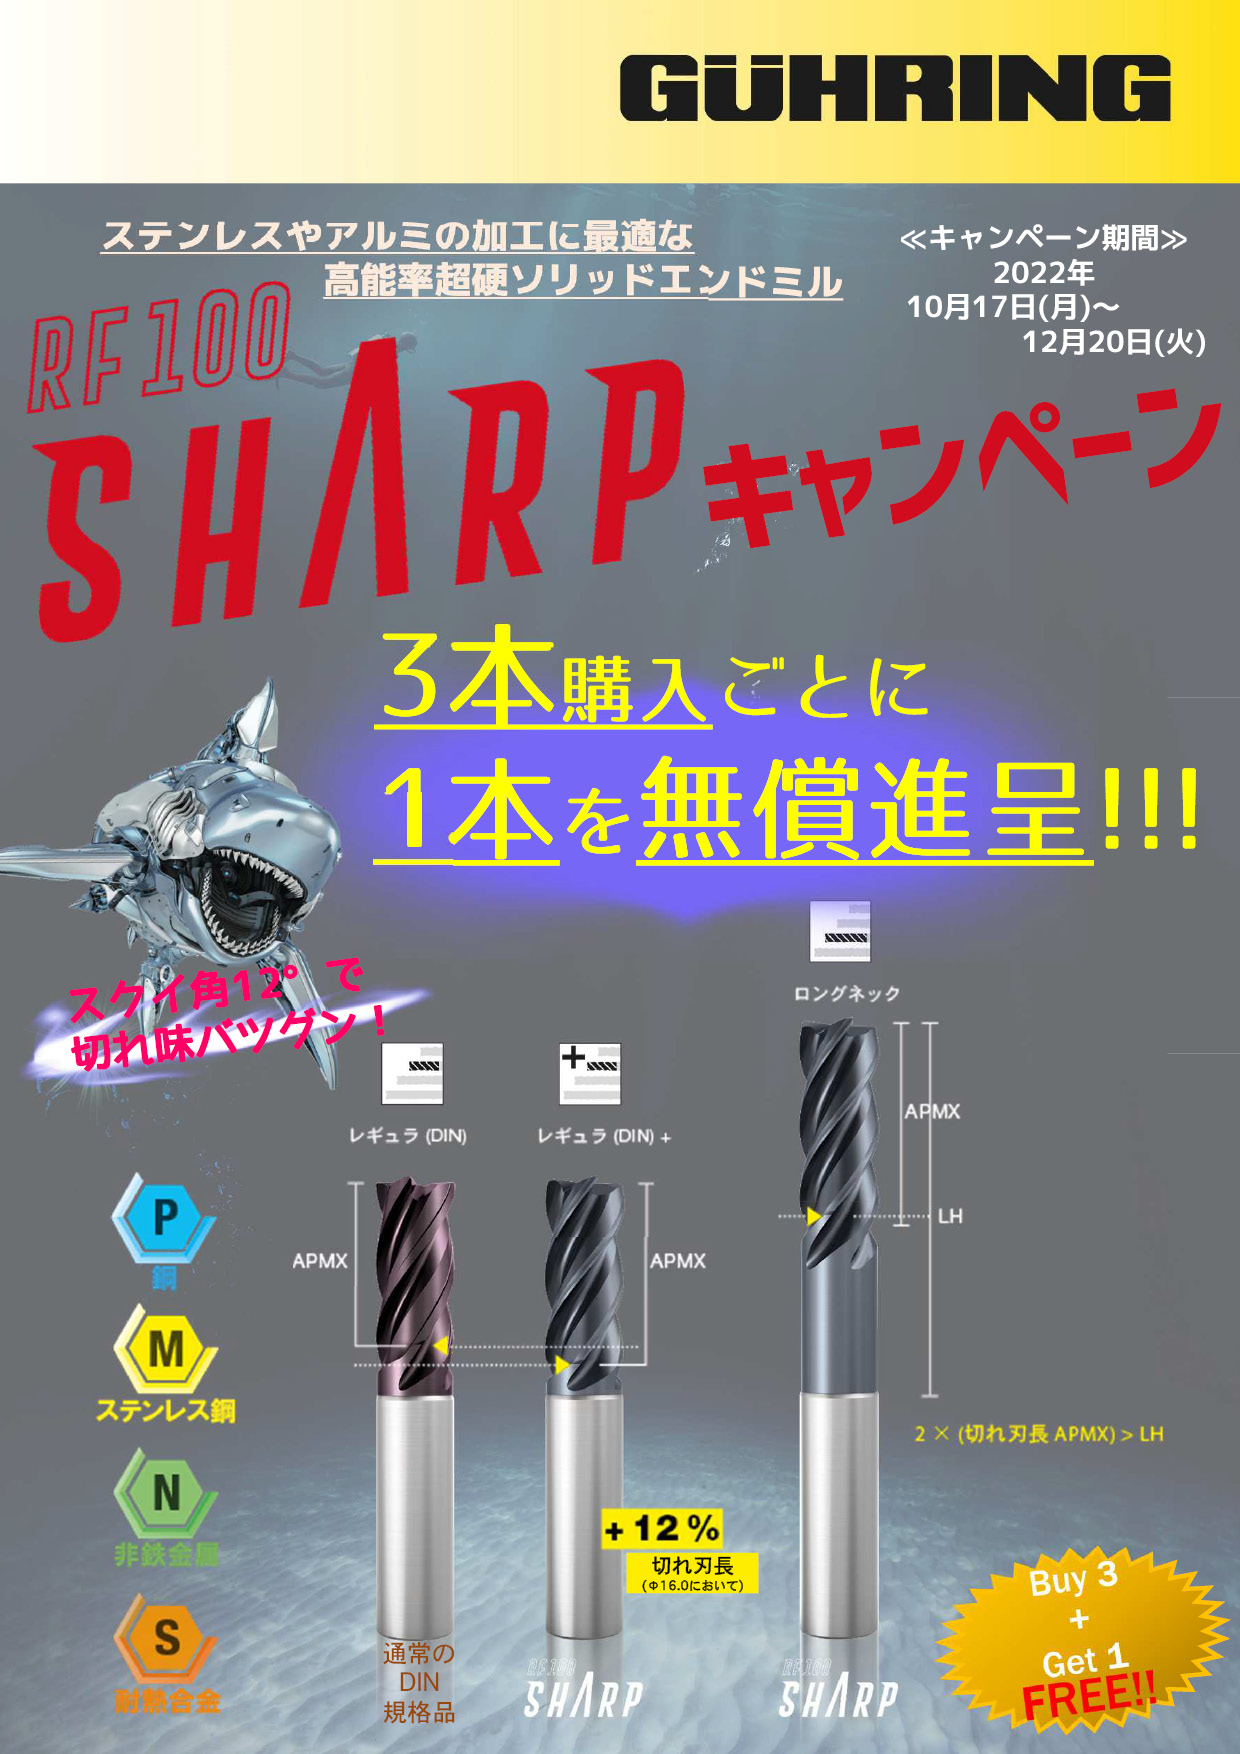 RF100 SHARP エンドミル / 超硬面取りミーリングカッタキャンペーン